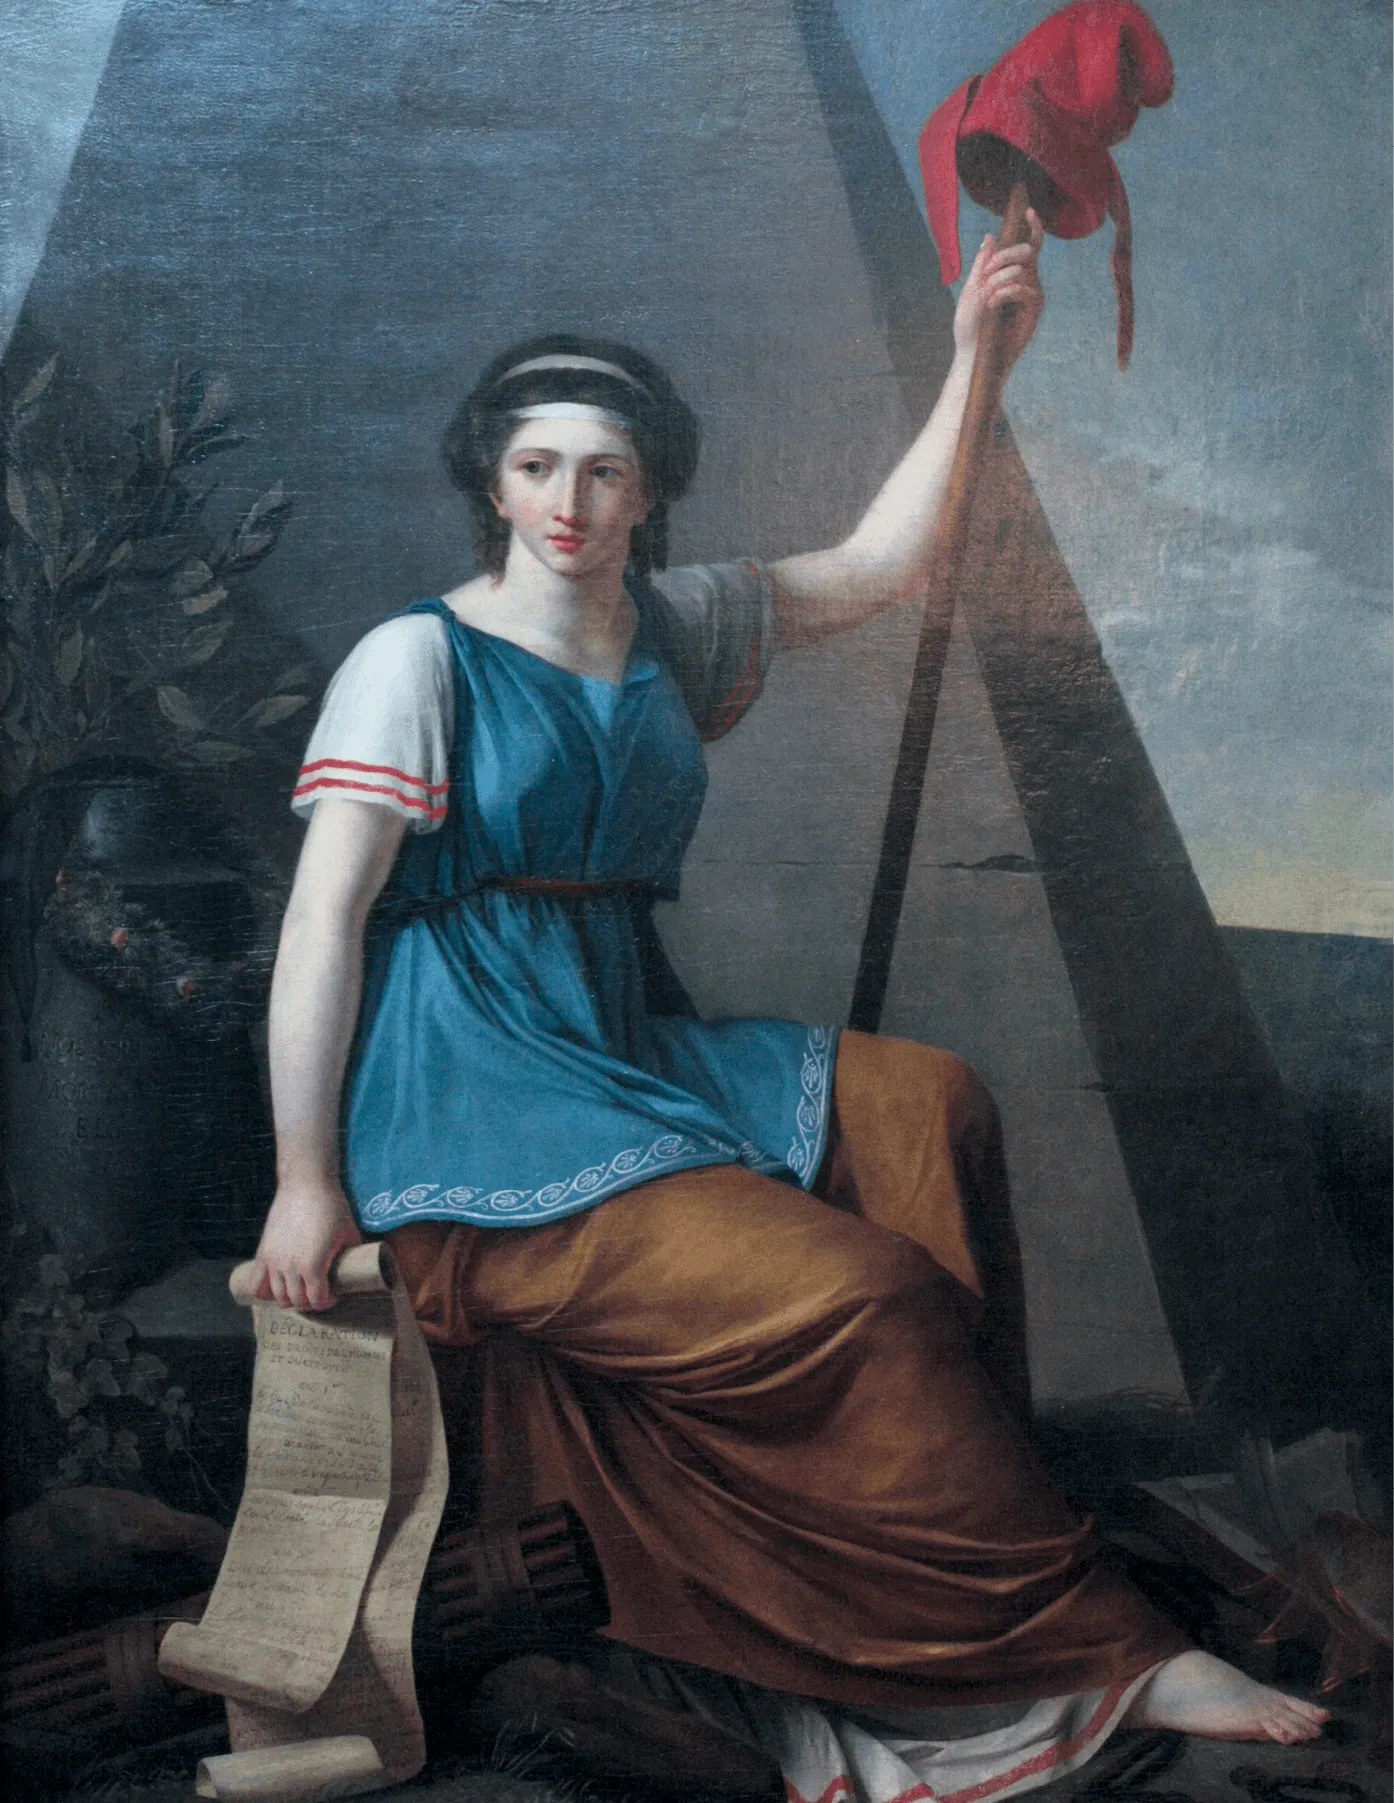 Les femmes engagées dans la peinture révolutionnaire